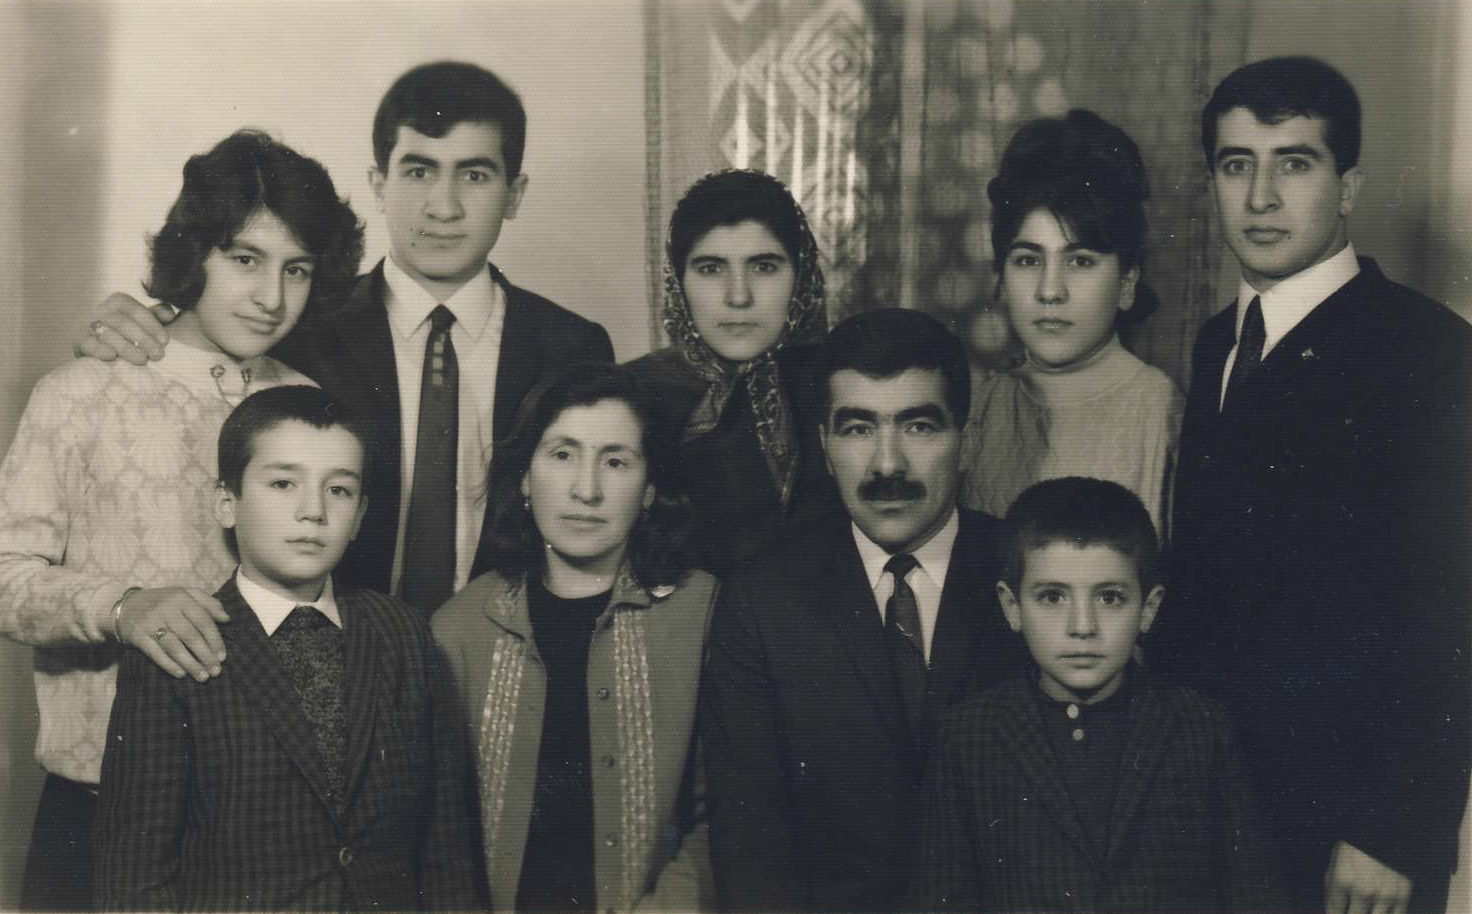 Malbata min-Moje rodina - 1968